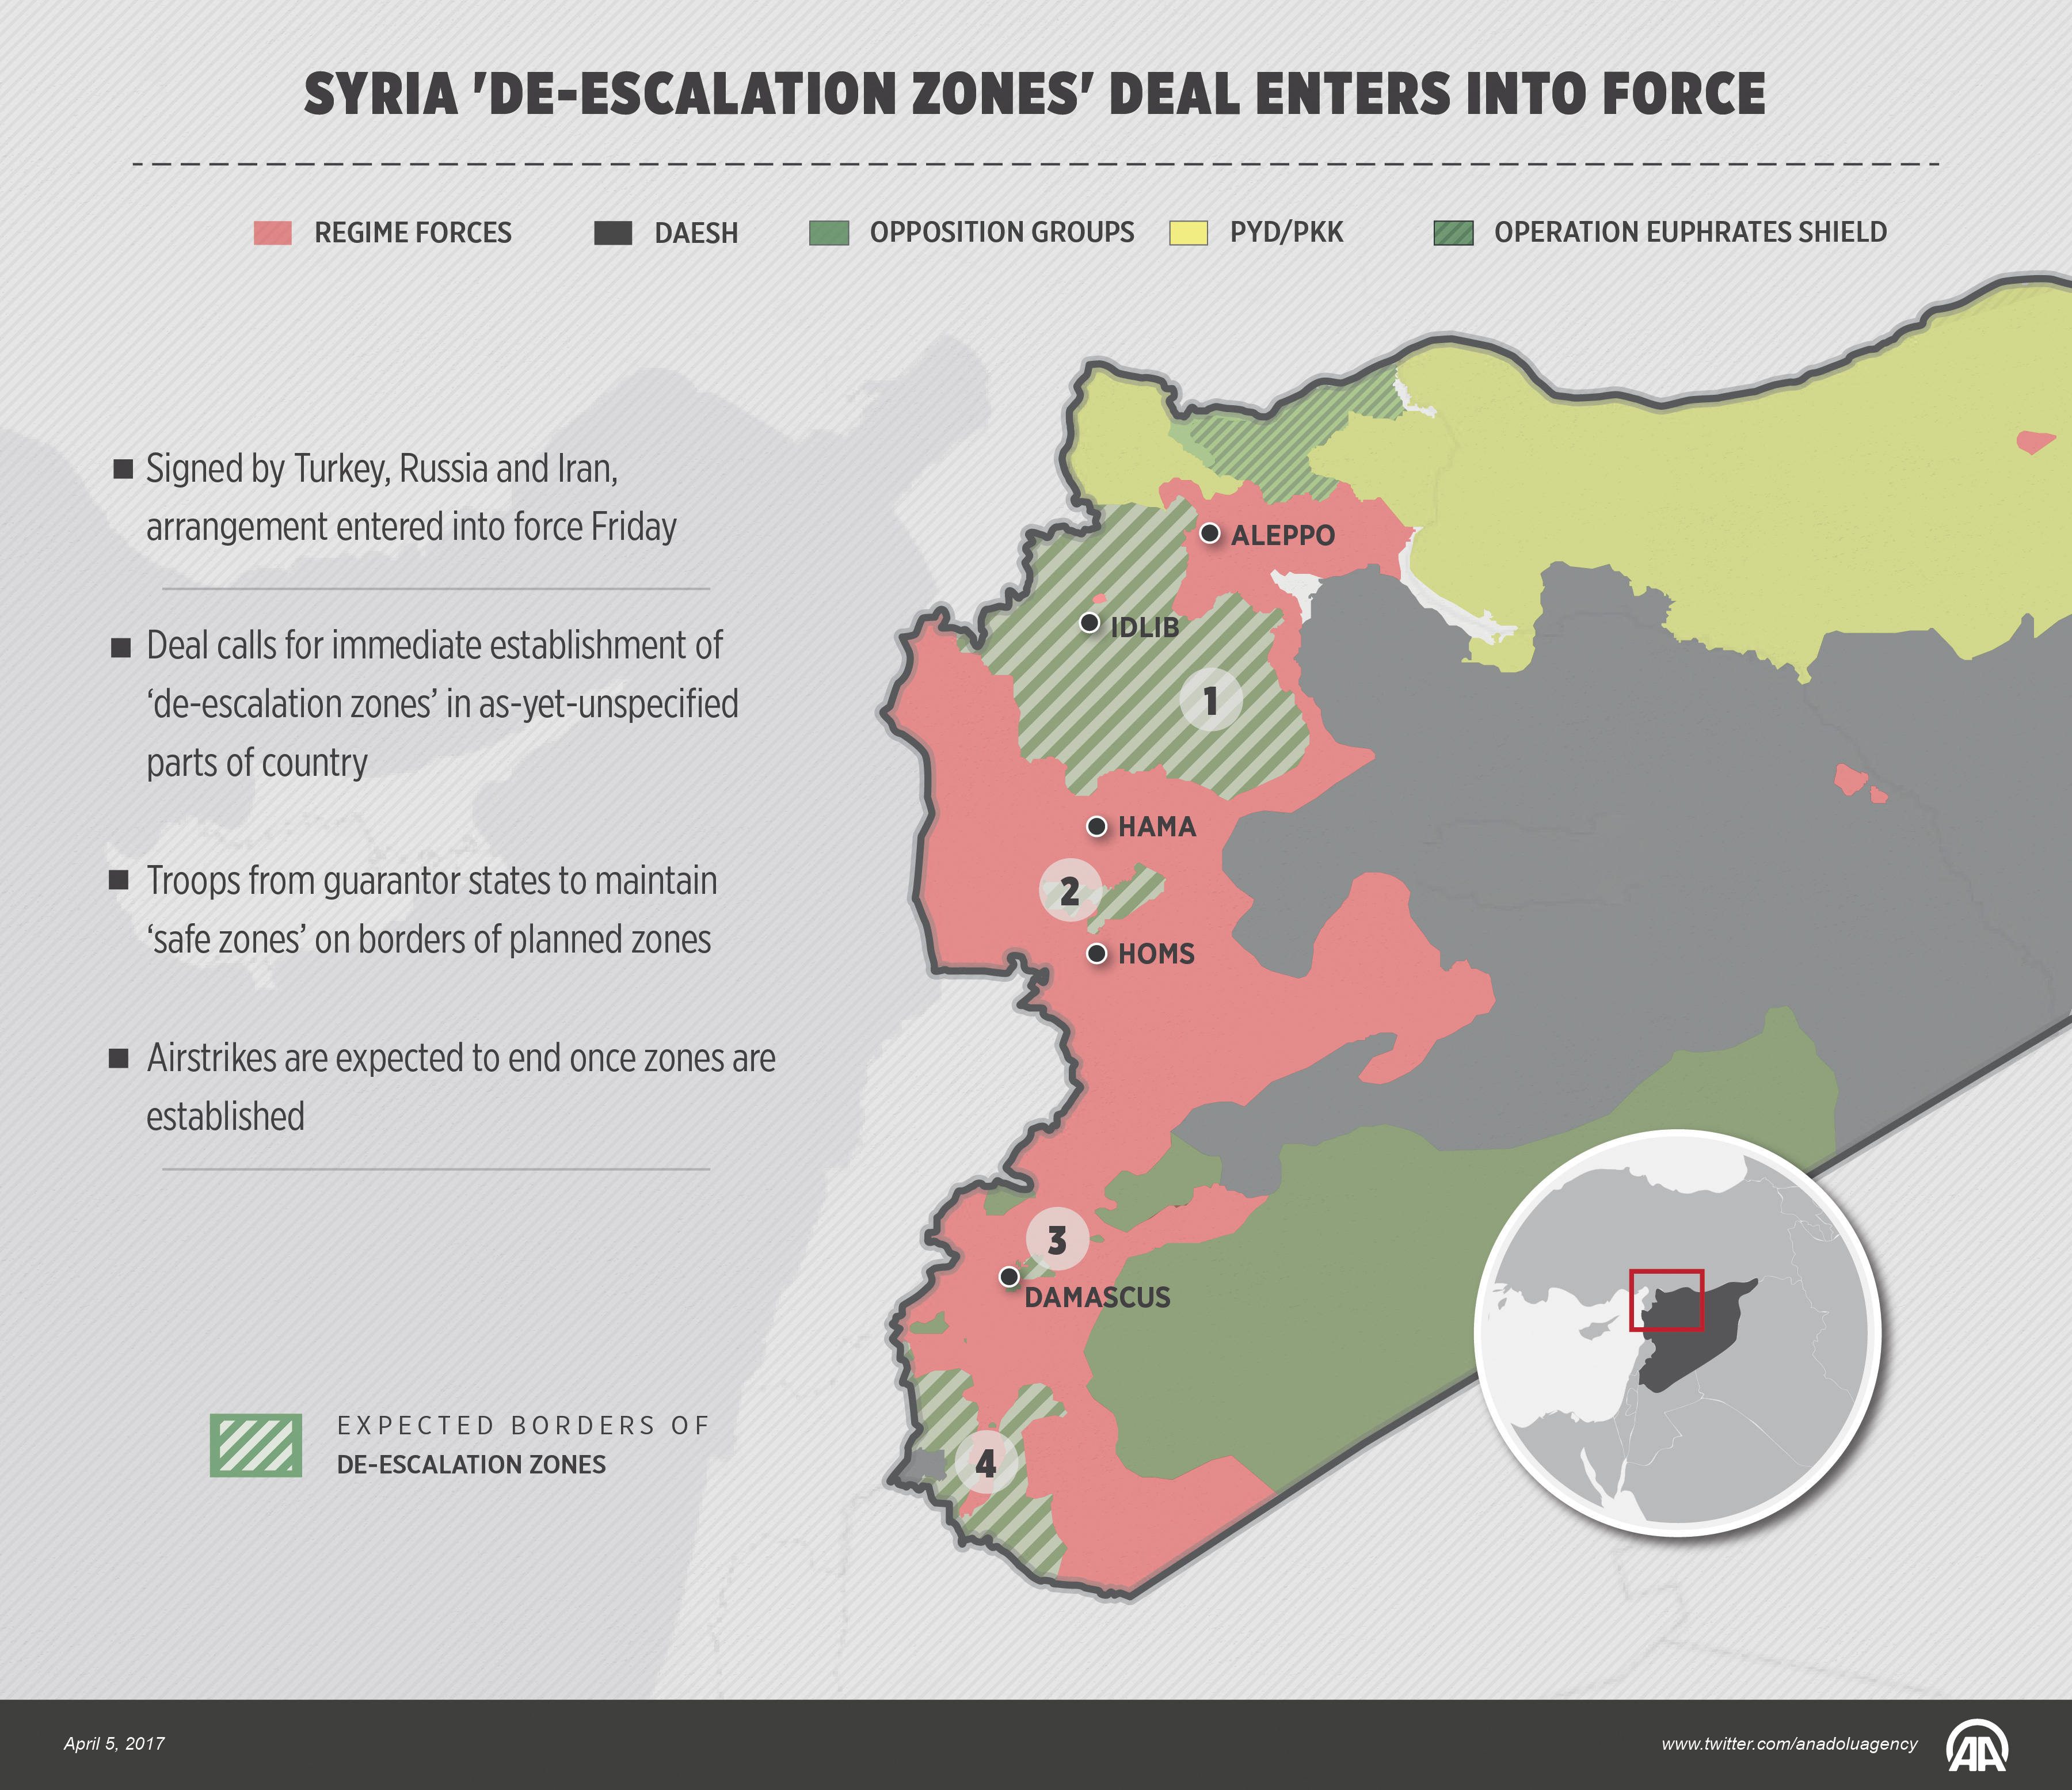 Syria 'de-escalation zones' arrangement enters into force